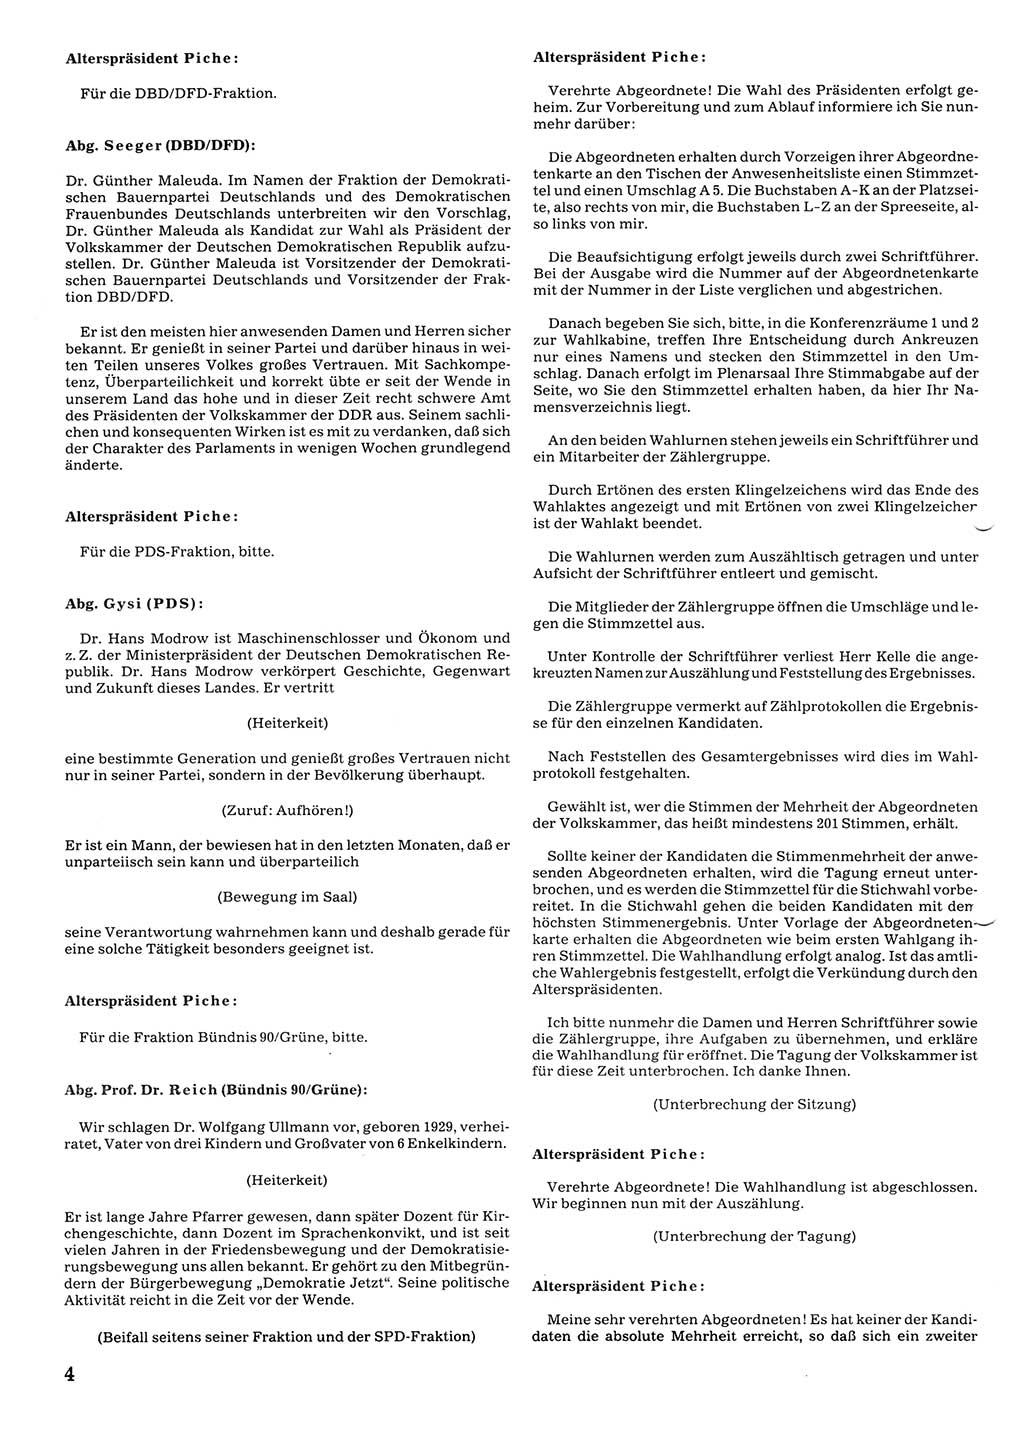 Tagungen der Volkskammer (VK) der Deutschen Demokratischen Republik (DDR), 10. Wahlperiode 1990, Seite 4 (VK. DDR 10. WP. 1990, Prot. Tg. 1-38, 5.4.-2.10.1990, S. 4)